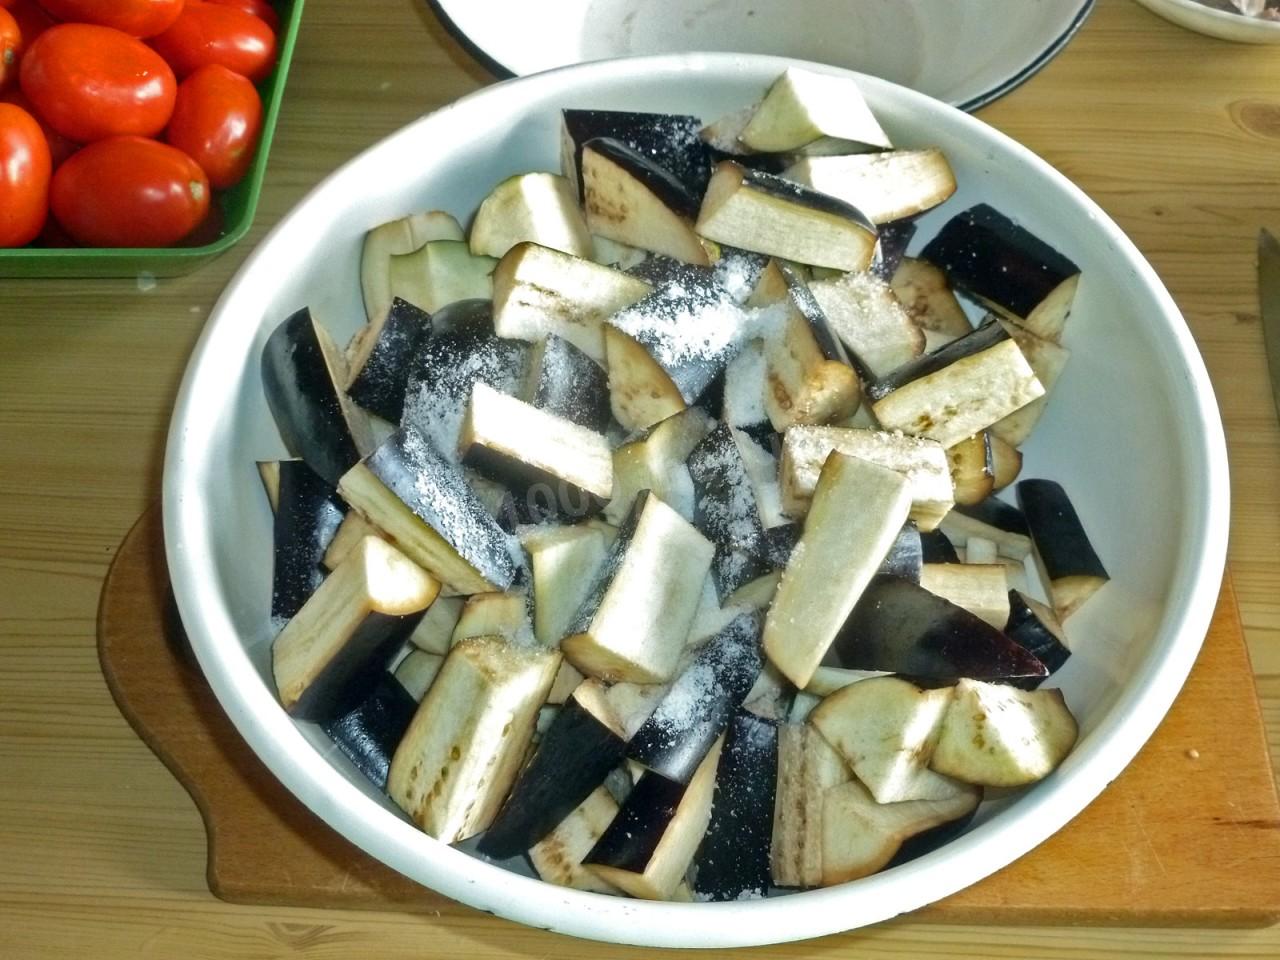 Замороженные баклажаны рецепты приготовления на сковороде с фото пошагово